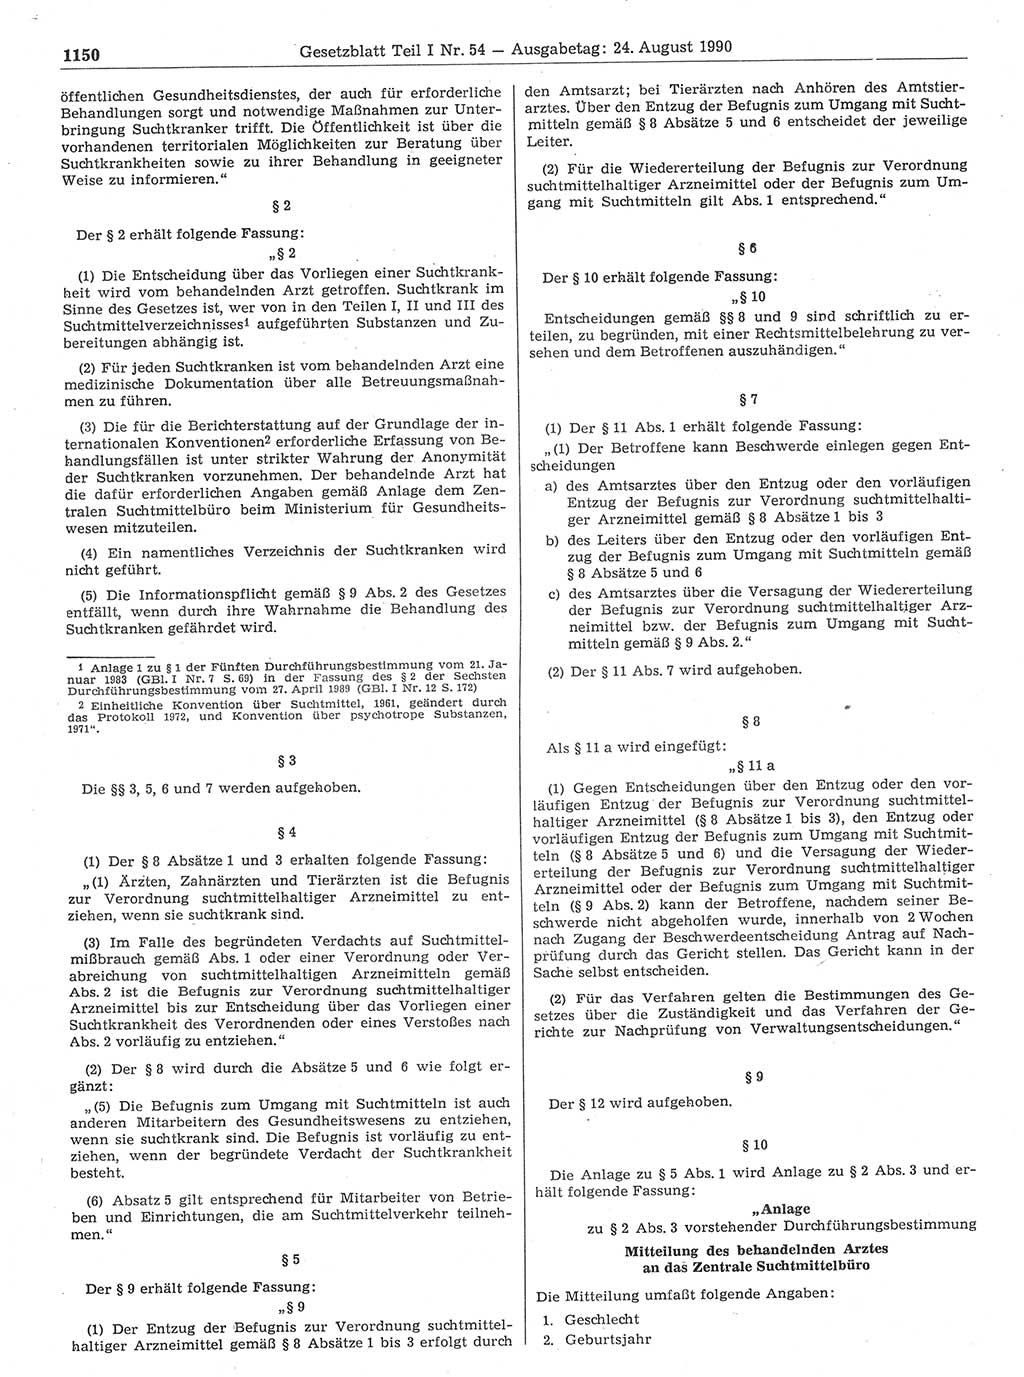 Gesetzblatt (GBl.) der Deutschen Demokratischen Republik (DDR) Teil Ⅰ 1990, Seite 1150 (GBl. DDR Ⅰ 1990, S. 1150)